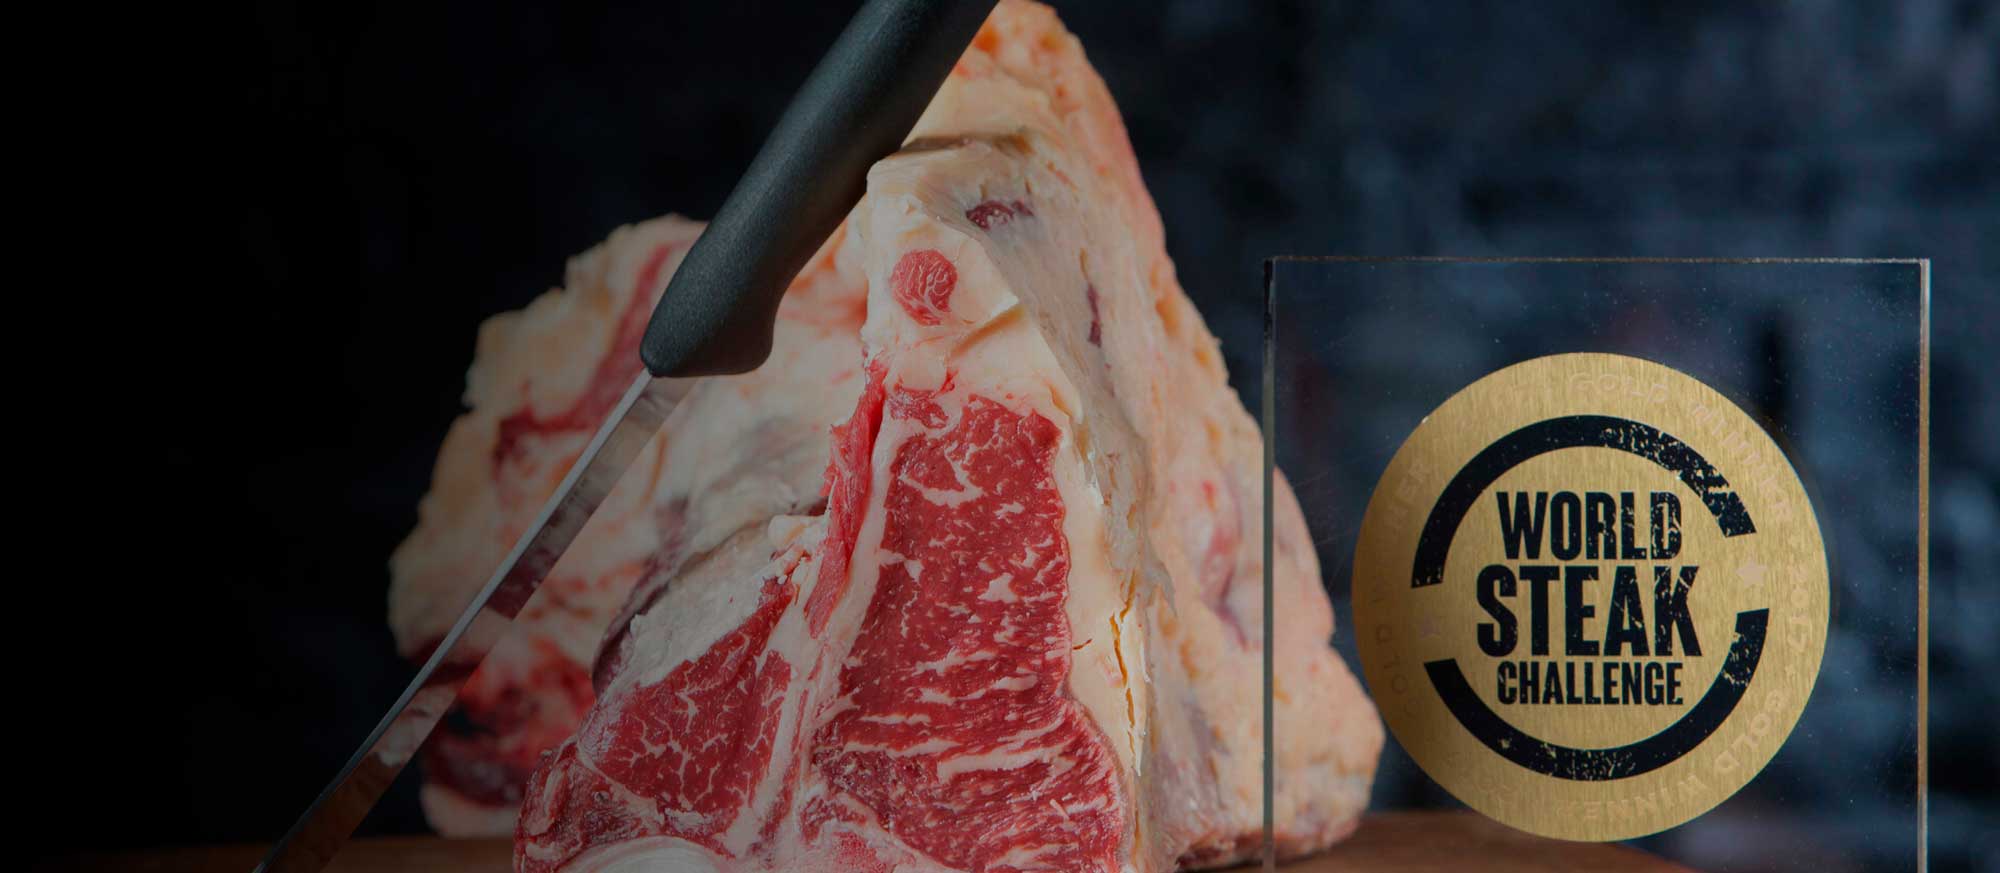 Finnisches Rindfleisch mit Knochen, Messer und Auszeichnung  daneben